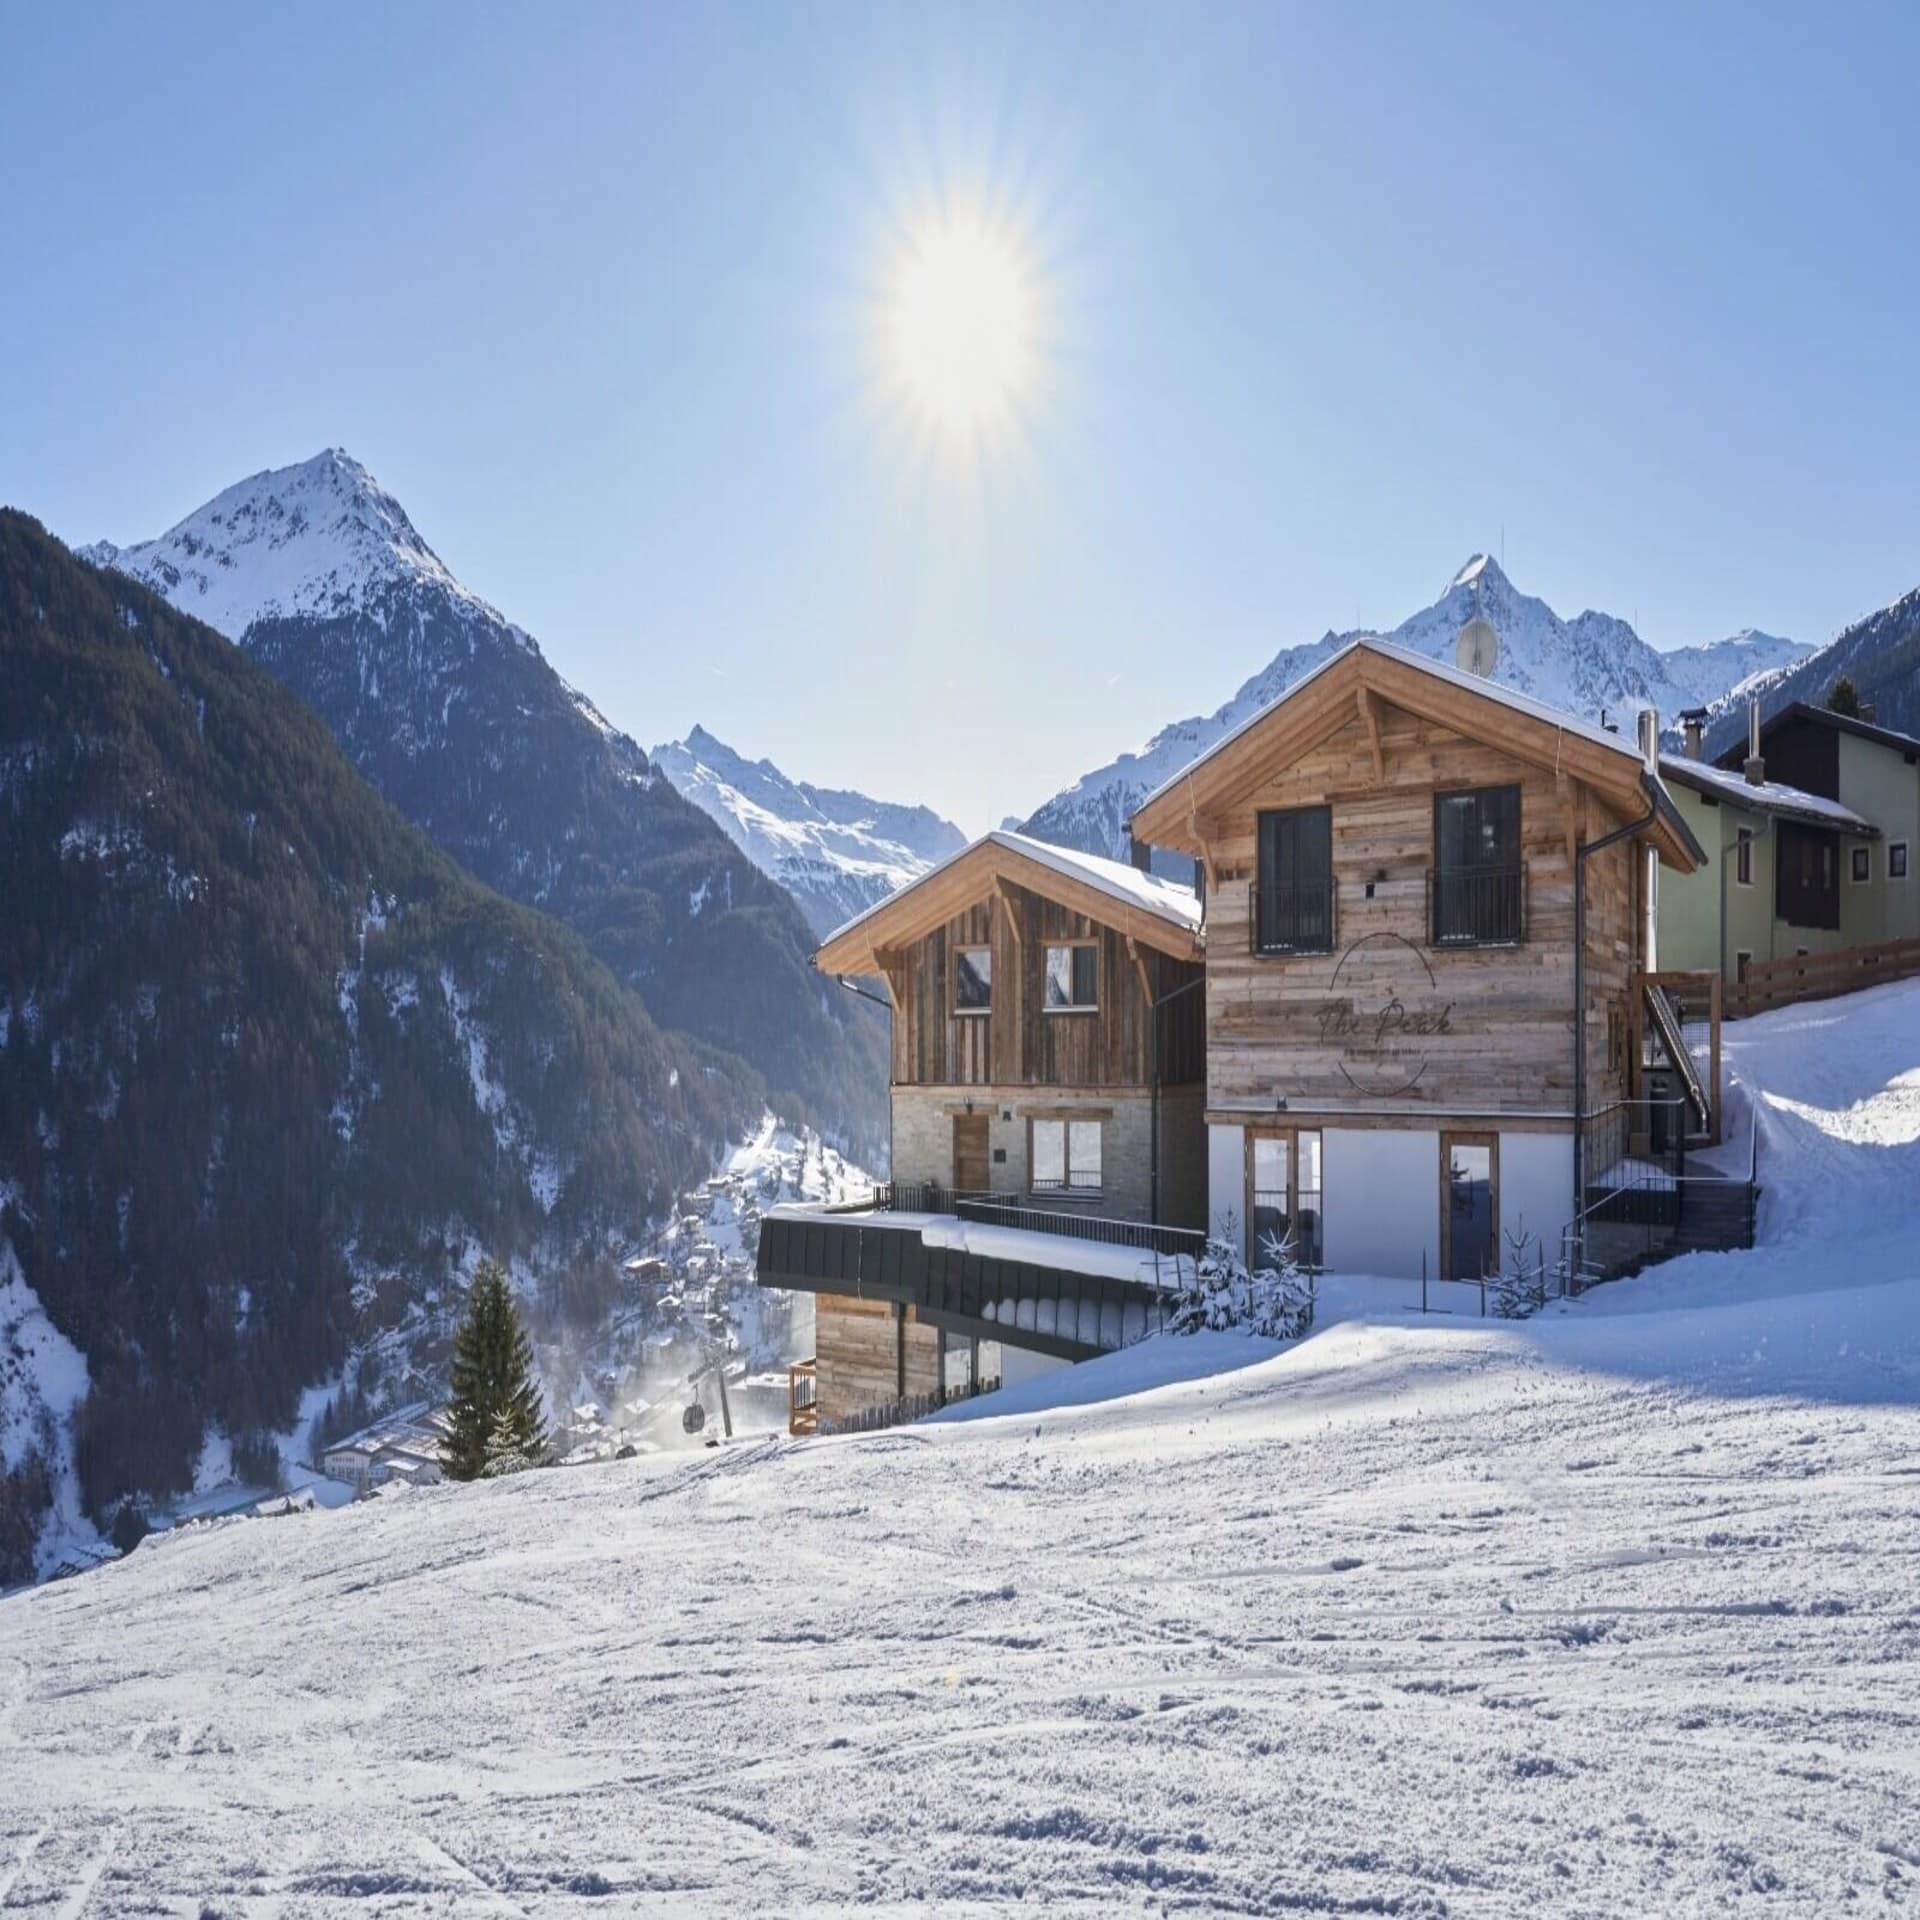 Urige Holzhütten an einer Skipiste in Tirol. Die Sonne scheint, es liegt Schnee. 